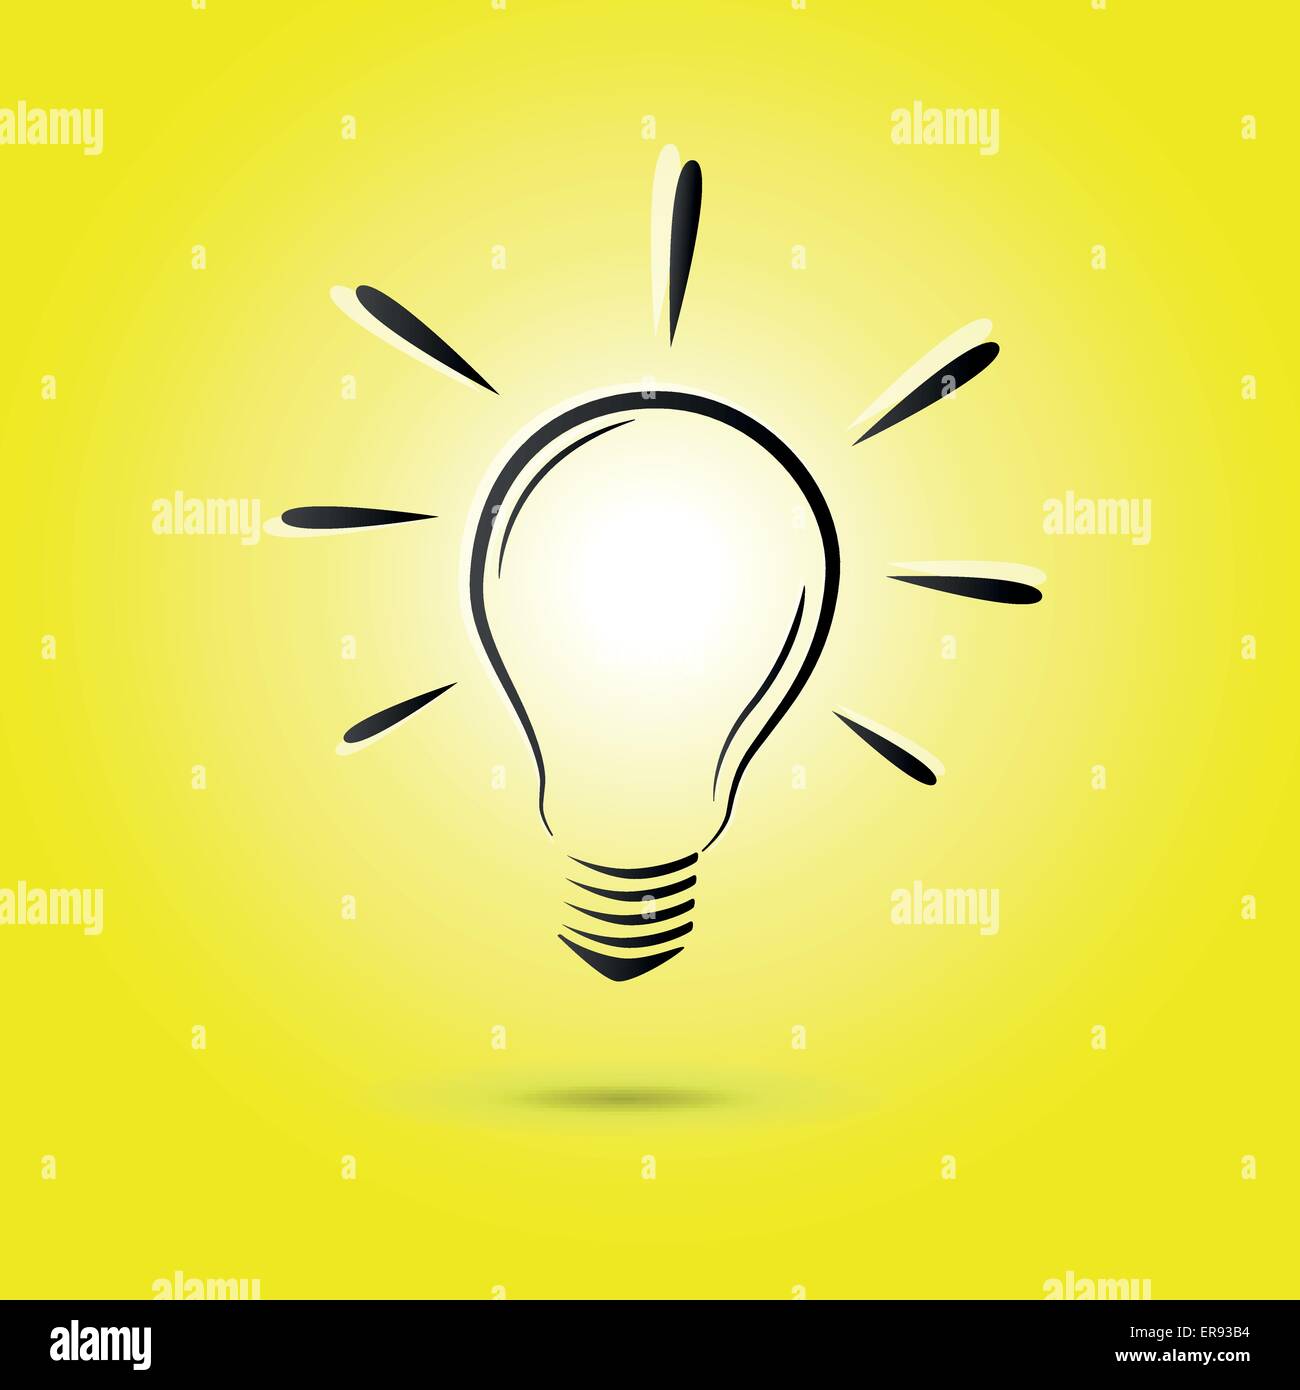 Illustrazione Vettoriale di sfondo giallo con disegno di lampadine Illustrazione Vettoriale